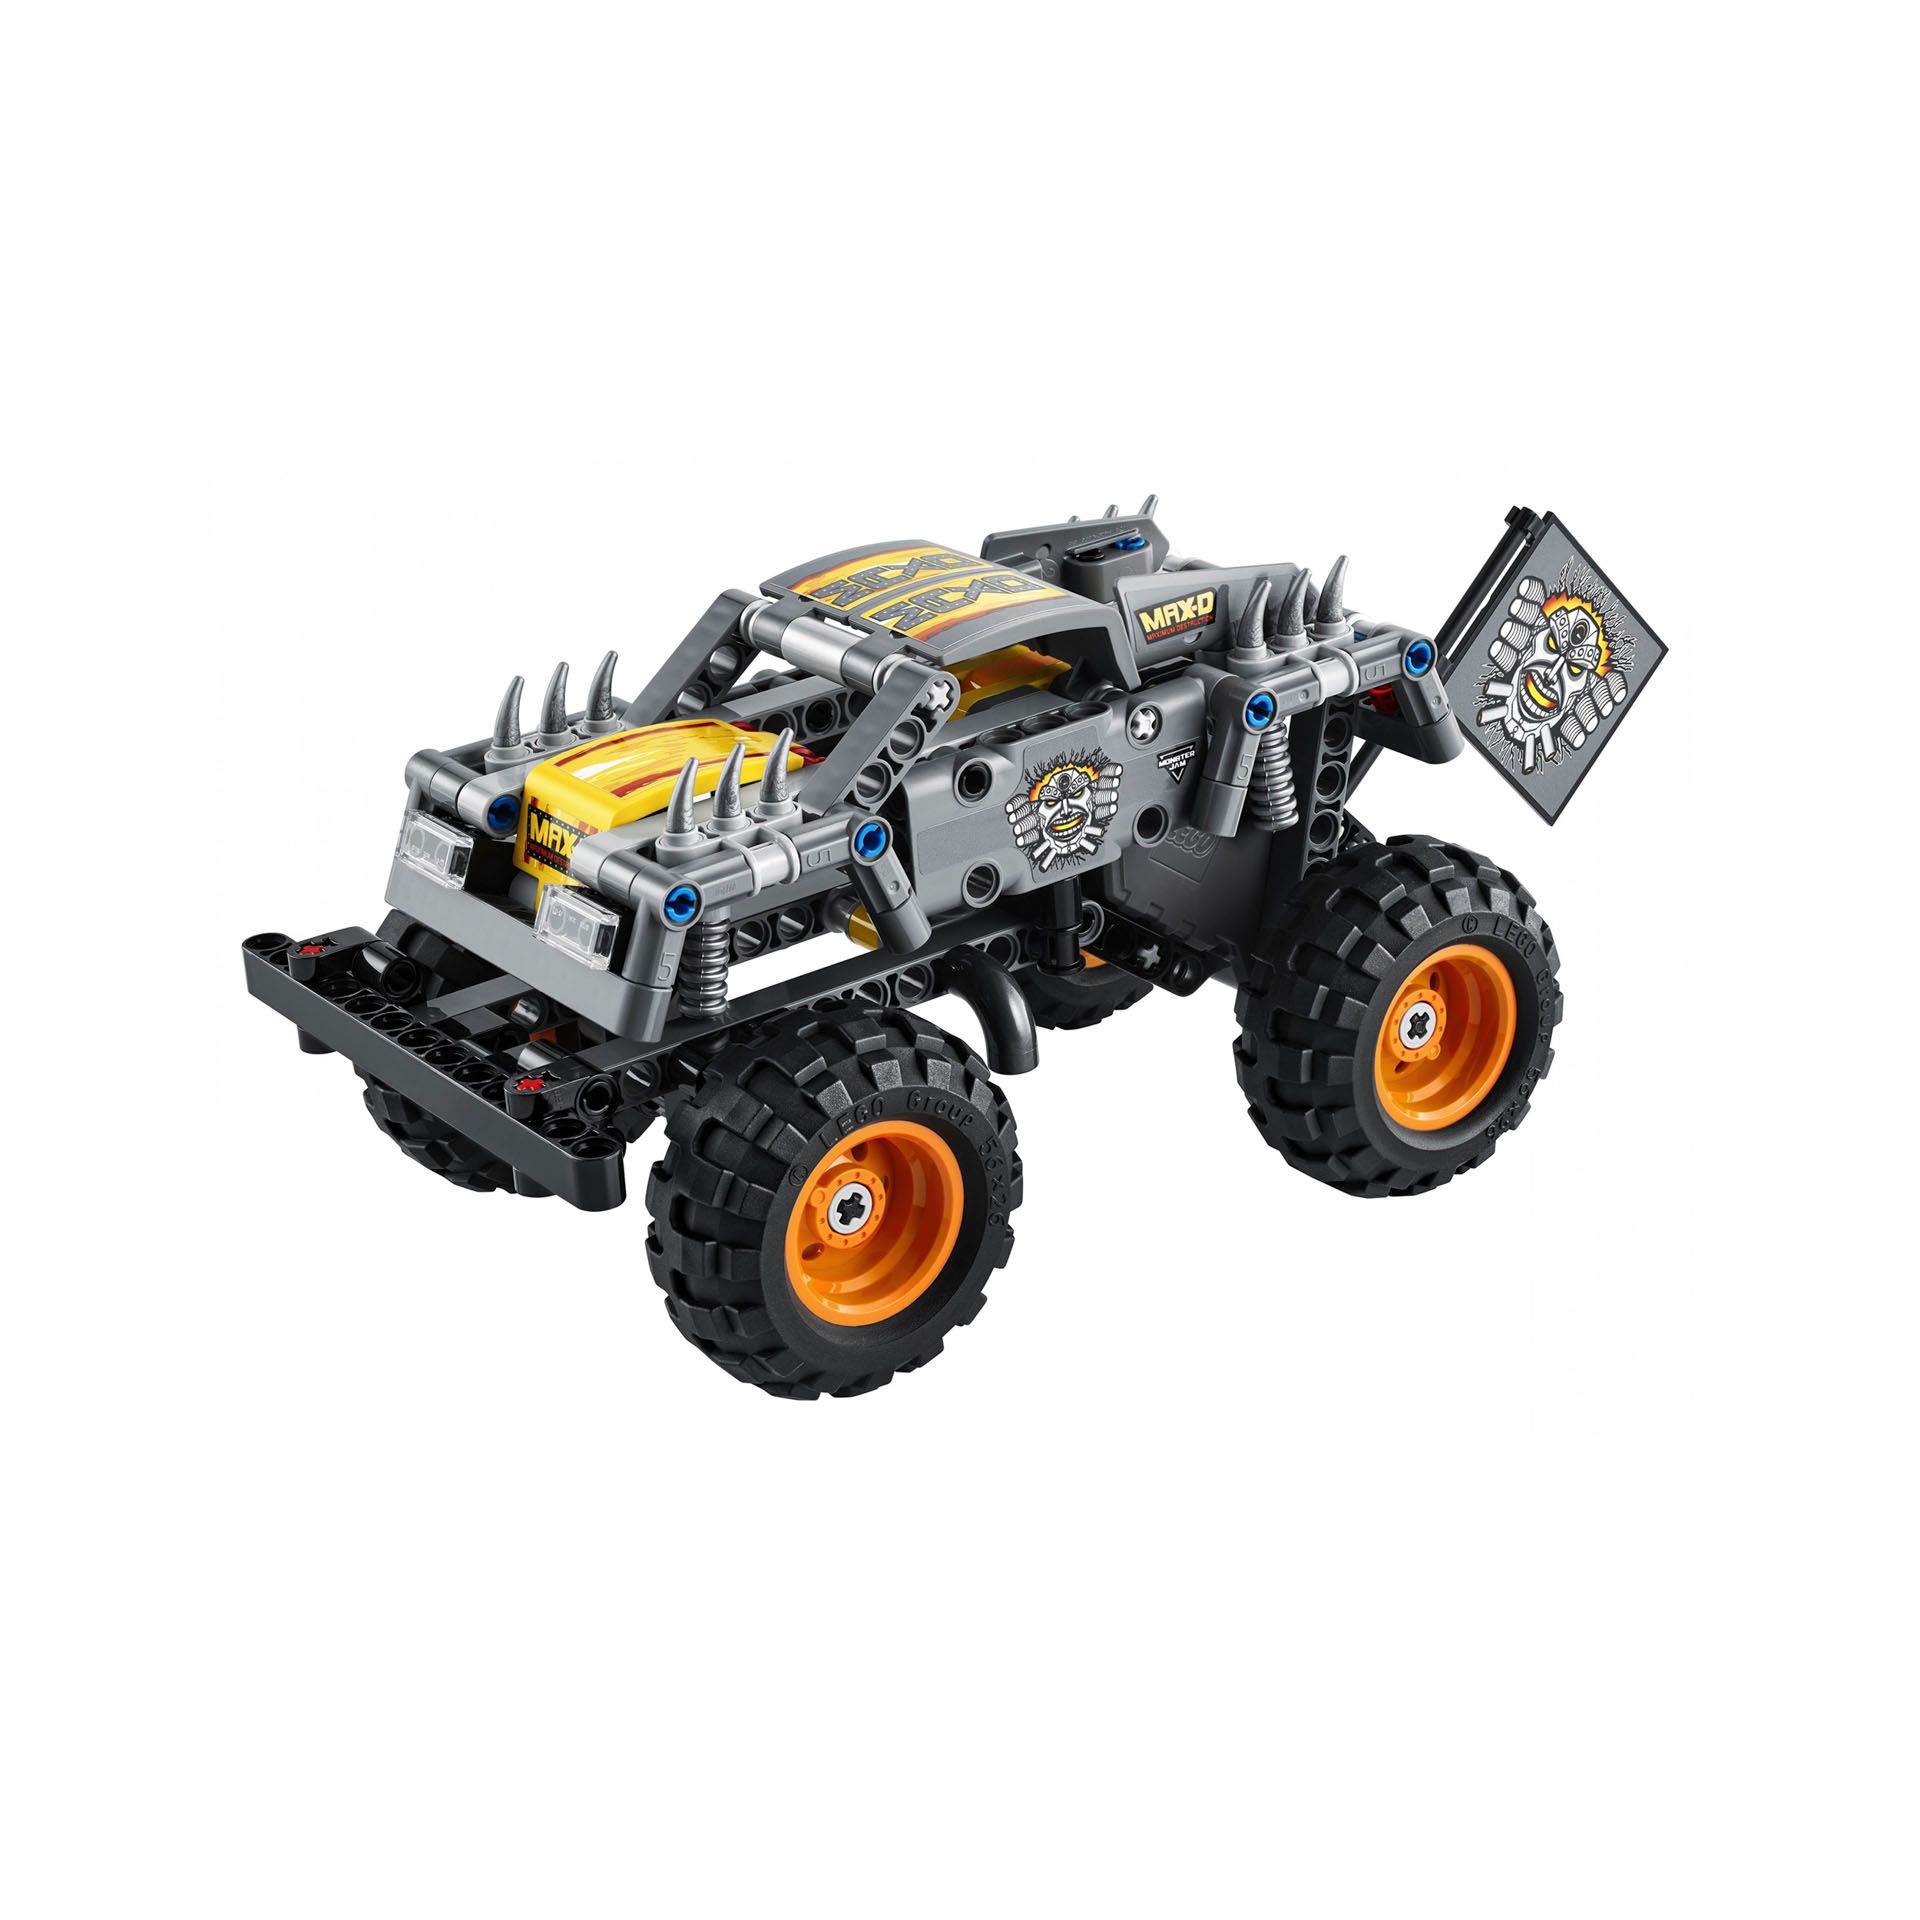 LEGO Technic Monster Jam Max-D, Kit di Costruzione 2 in 1, Truck, Quad, Auto Pul 42119, , large